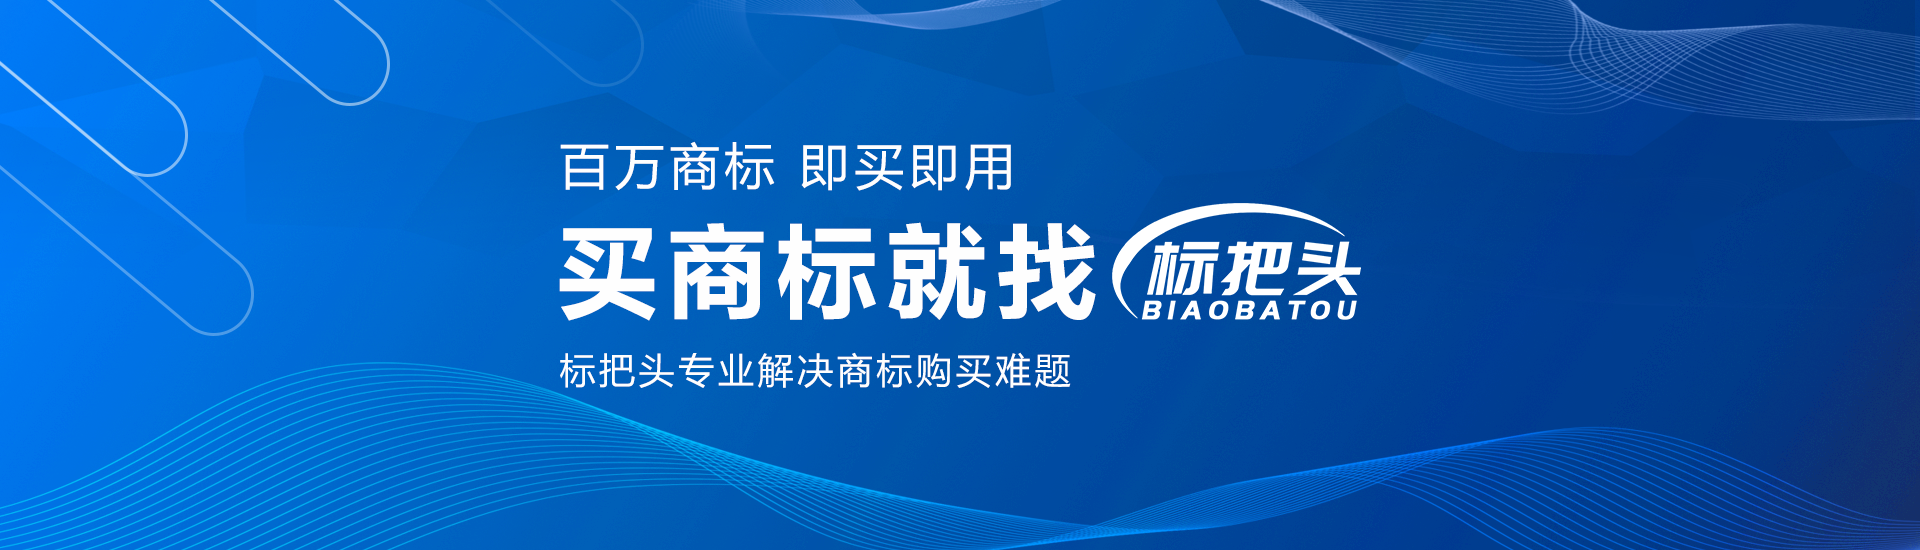 郑州市标把头企业管理咨询有限公司公司介绍